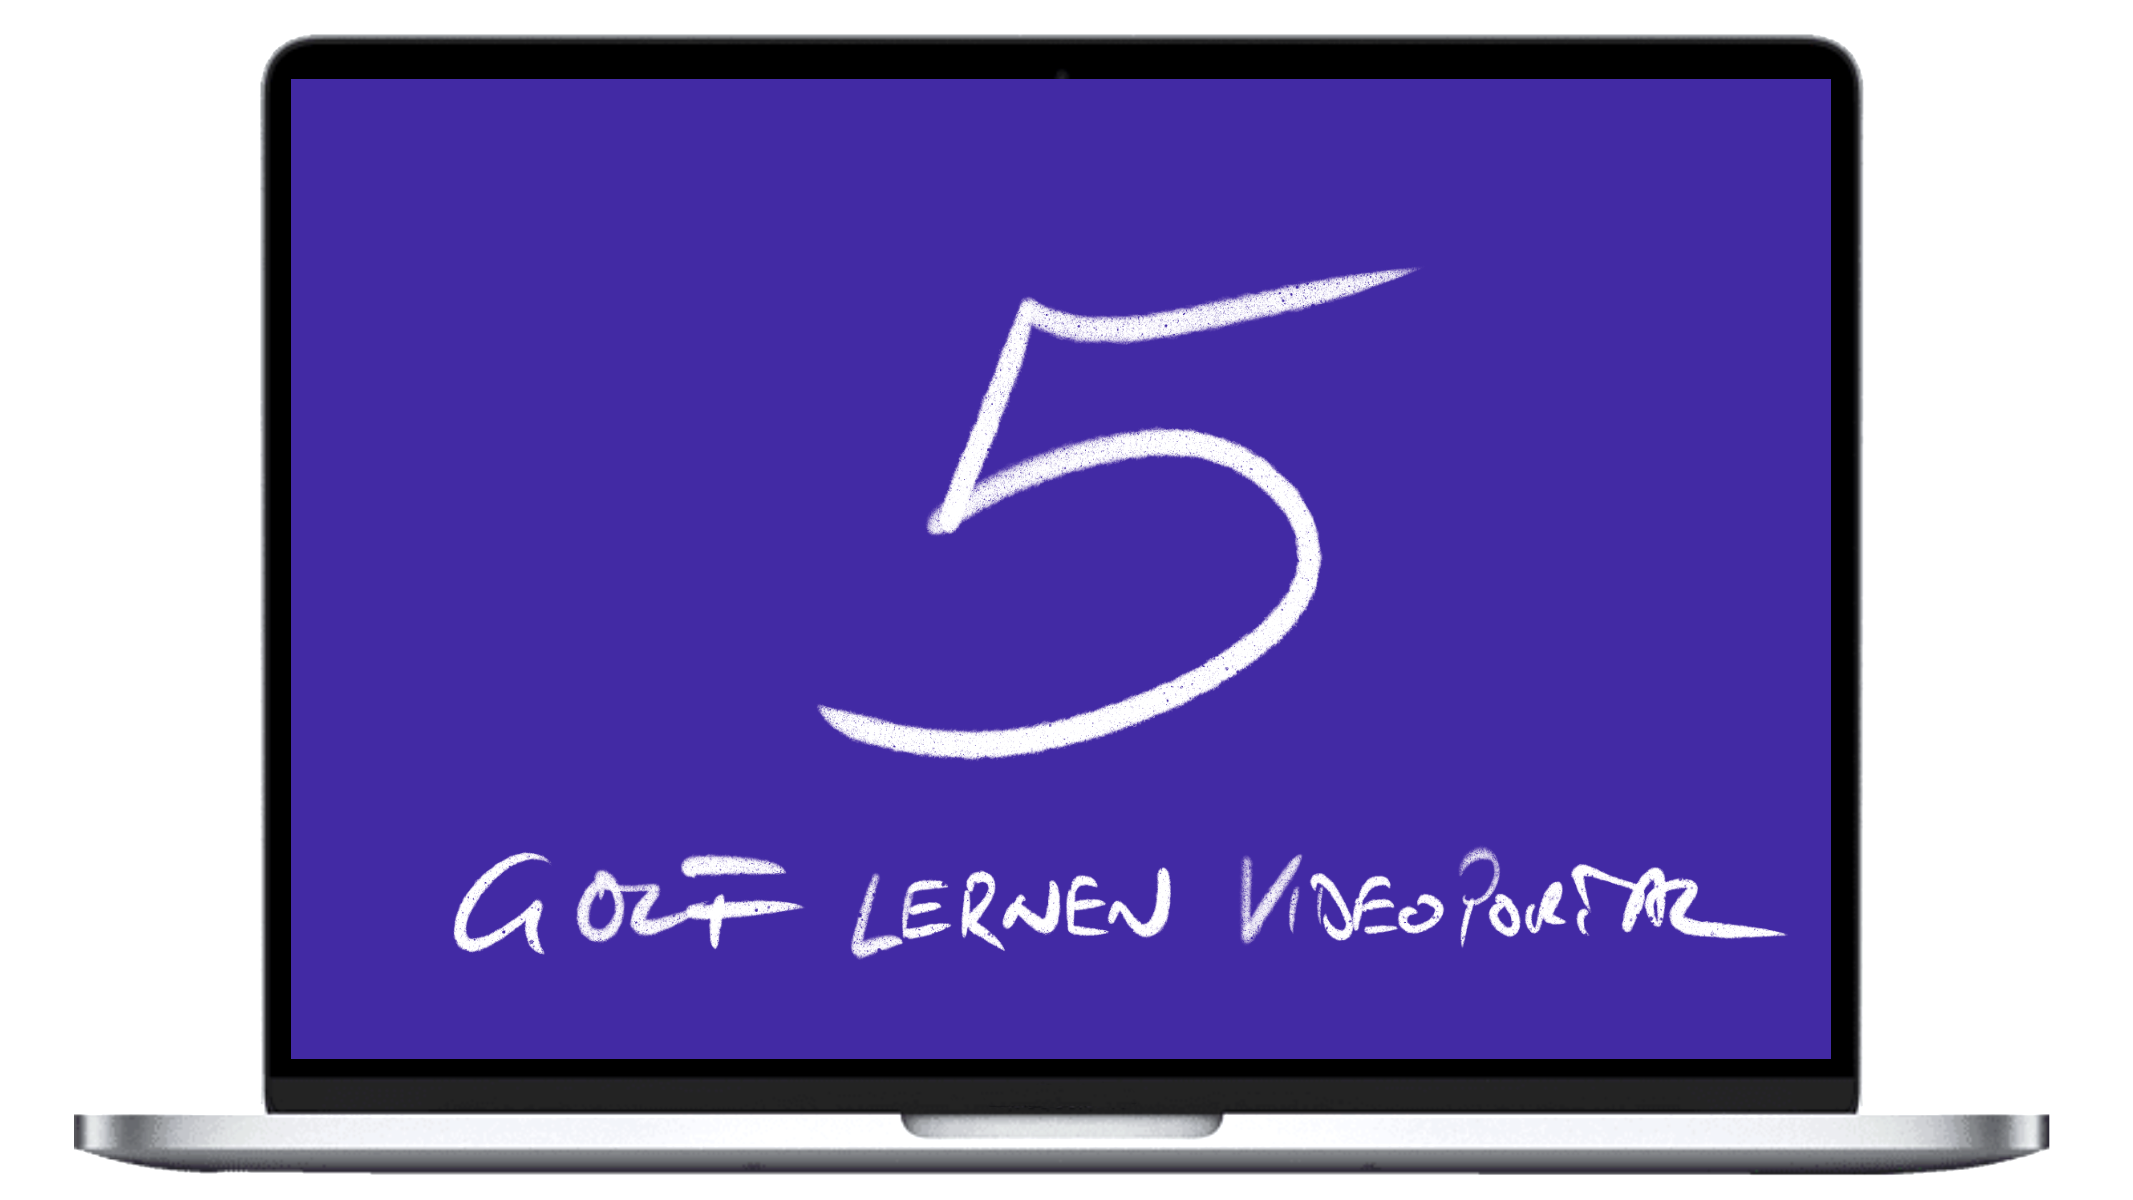 Golftraining Online | Das Golf lernen Videoportal ist nun 5 Jahre alt | Online den Golfschwung lernen bei Ihnen Zuhause! Golf lernen durch 300+ Trainingsvideos von einem der besten Golflehrer Deutschlands!